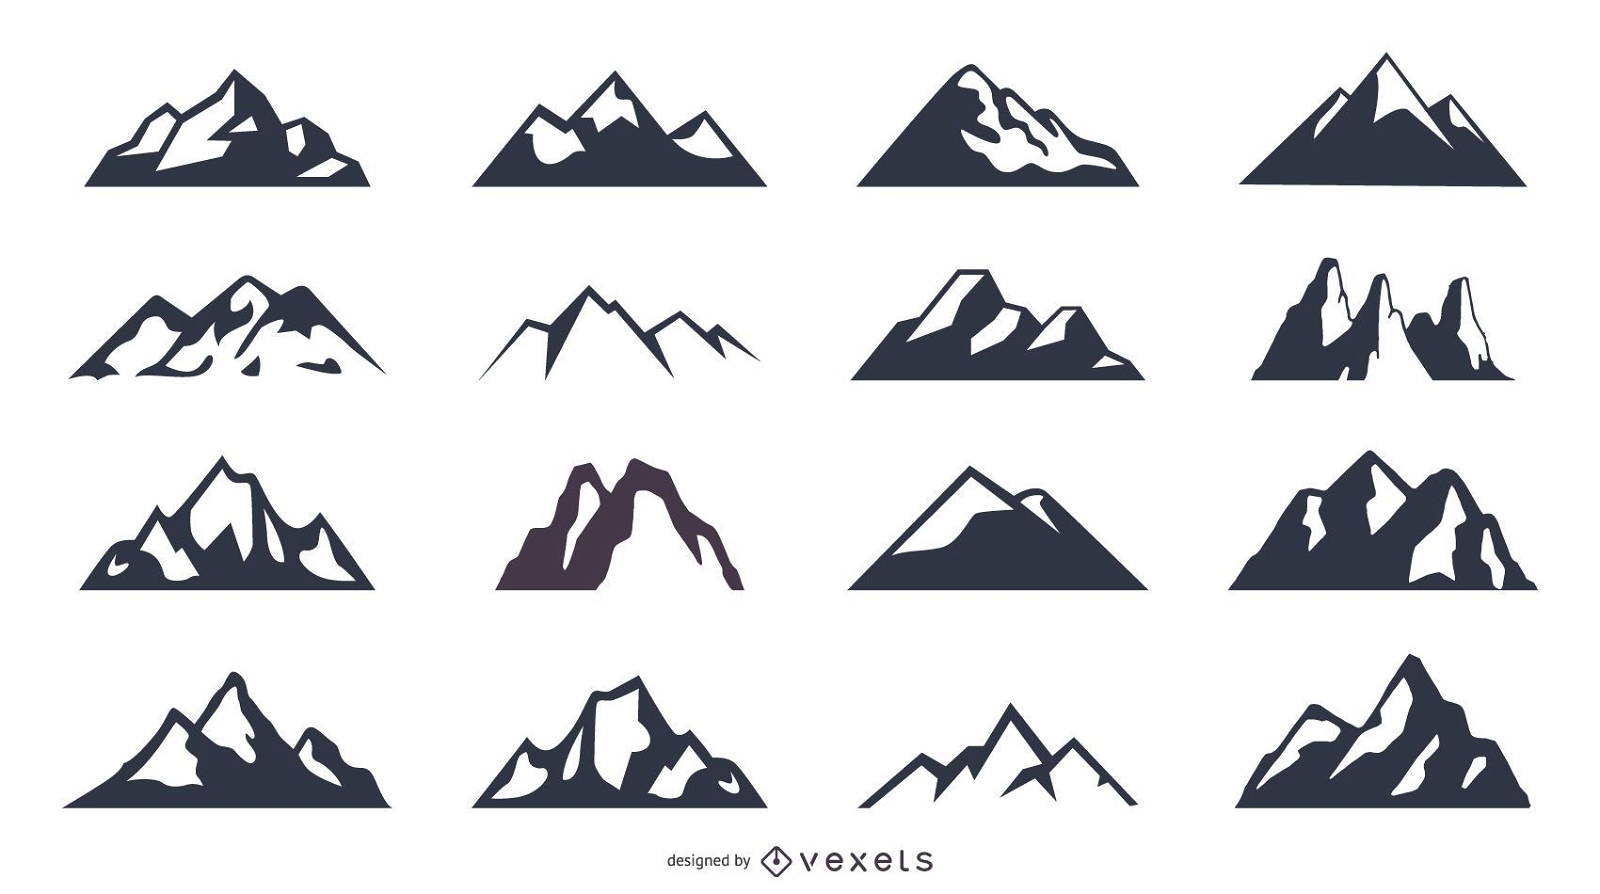 Conjunto de iconos de silueta de montaña